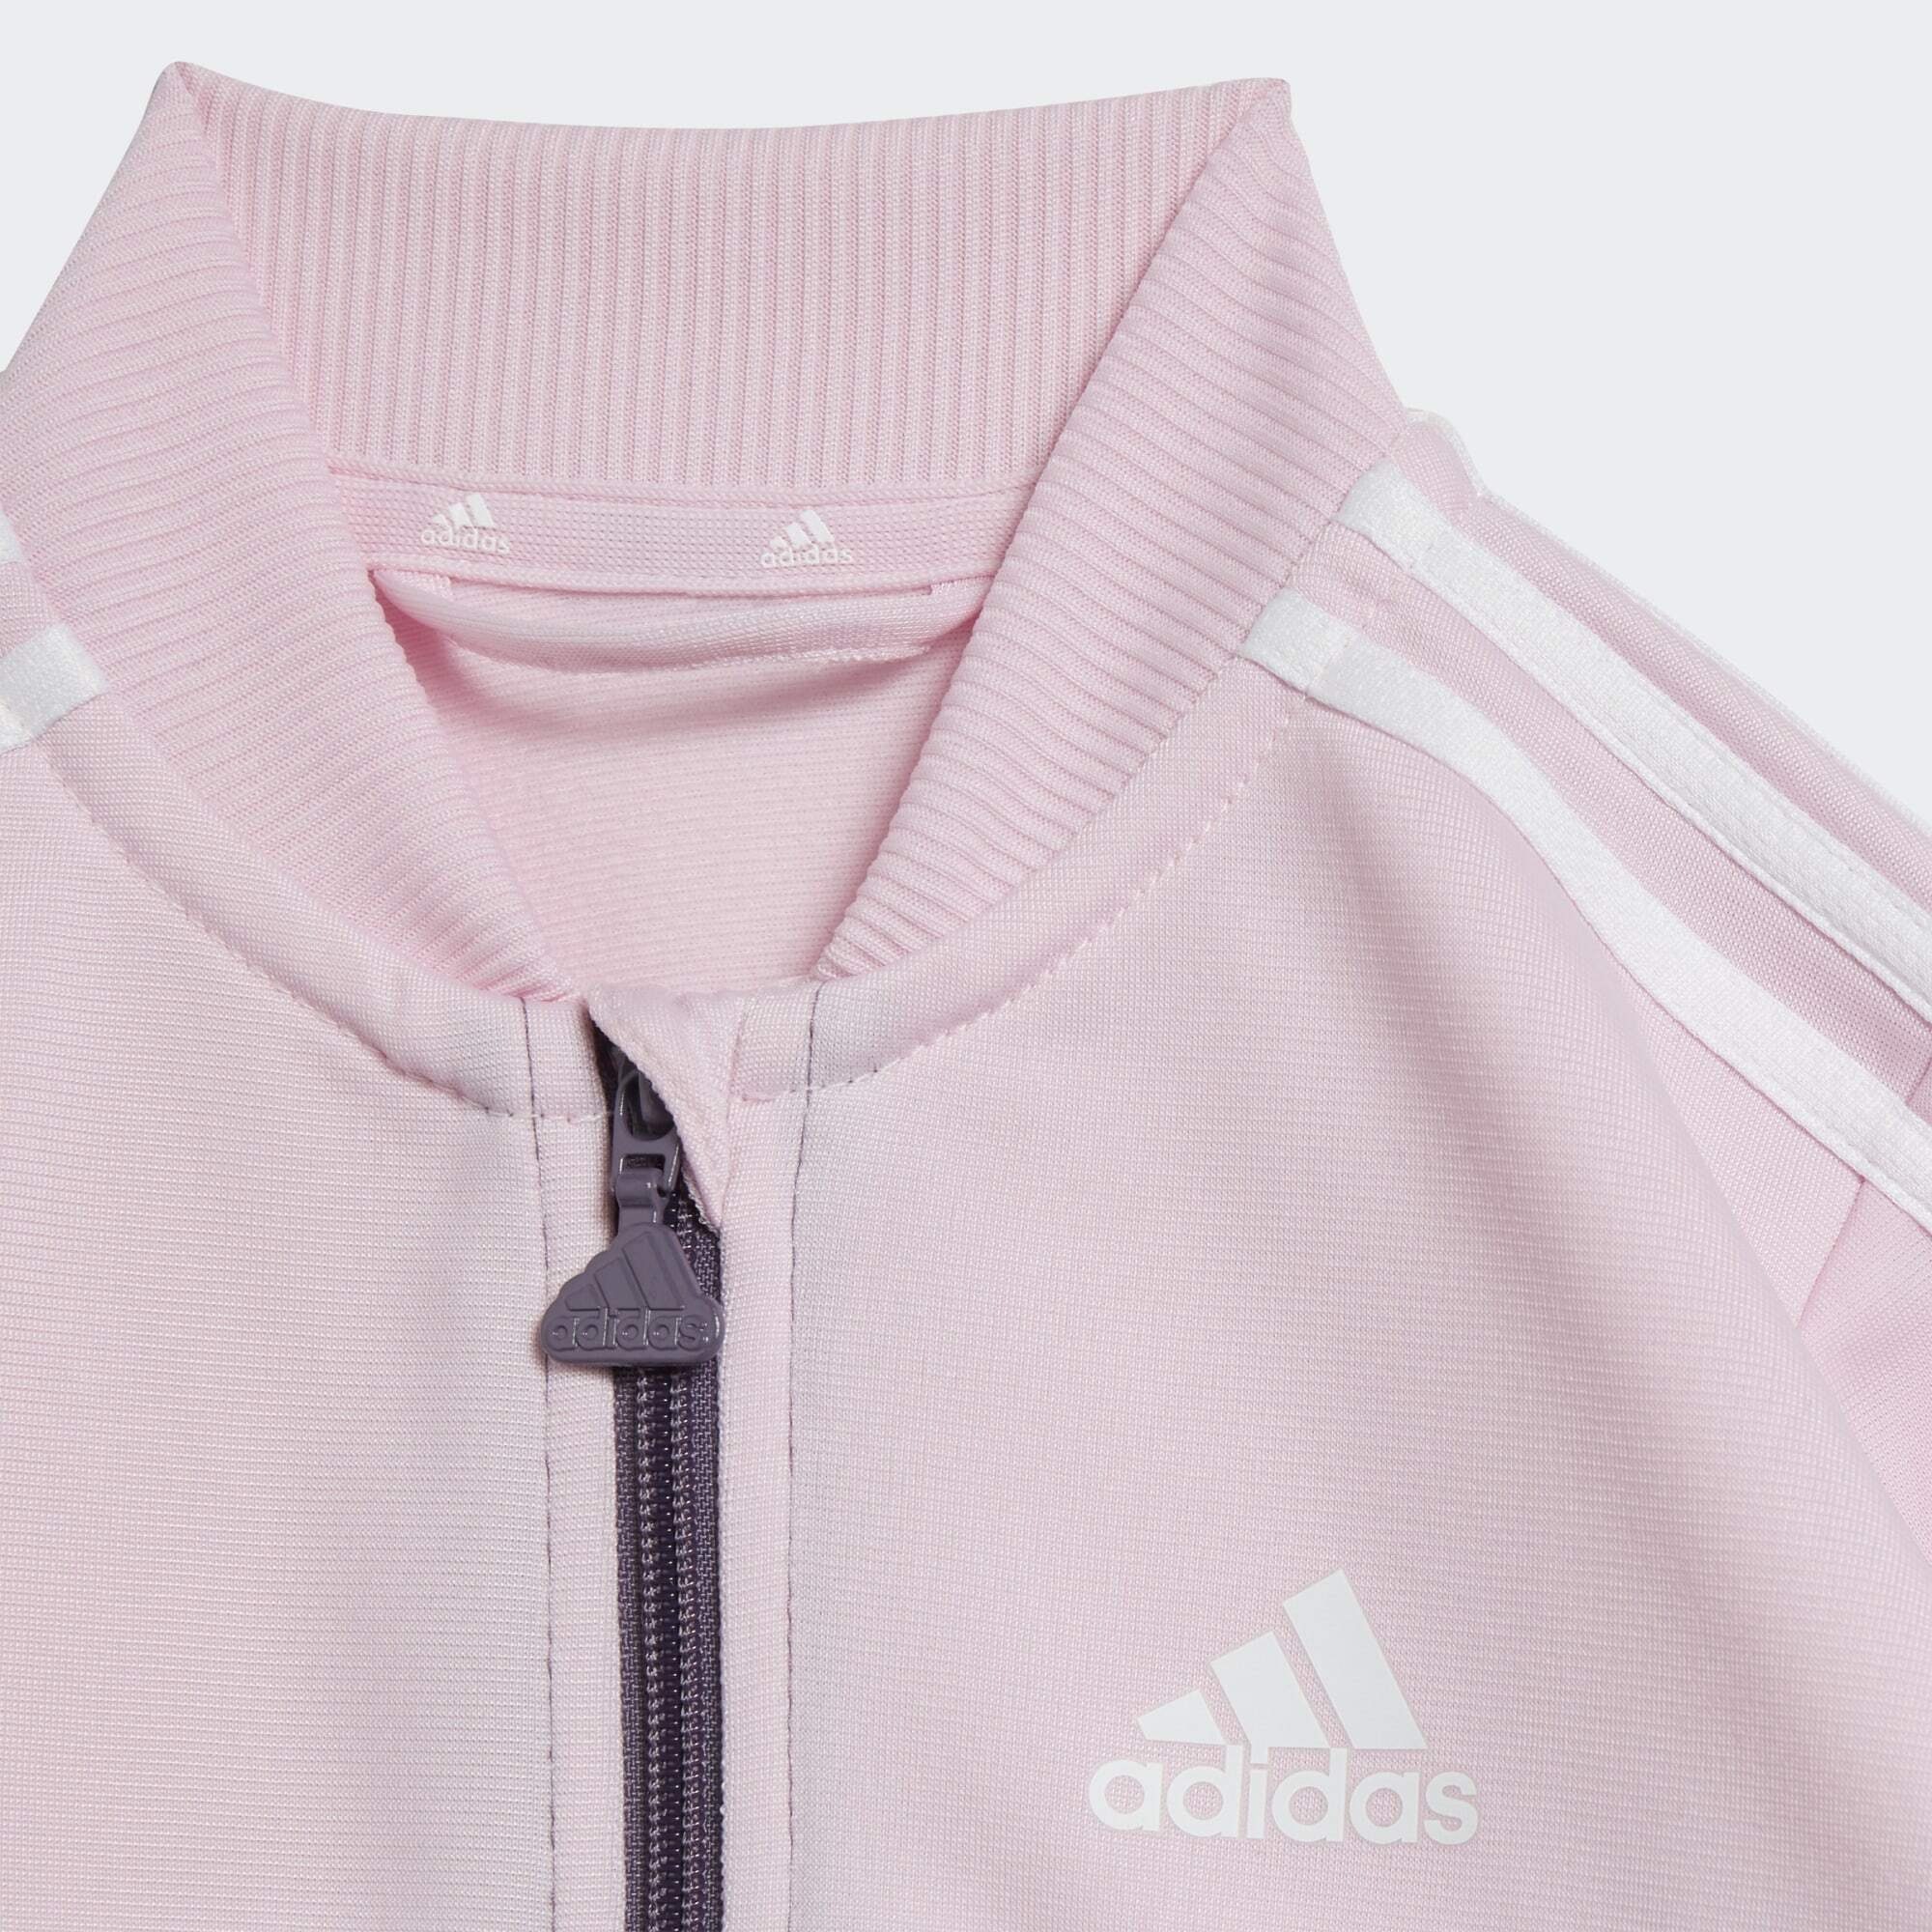 adidas Sportswear Trainingsanzug Clear Pink White / Shadow / Violet